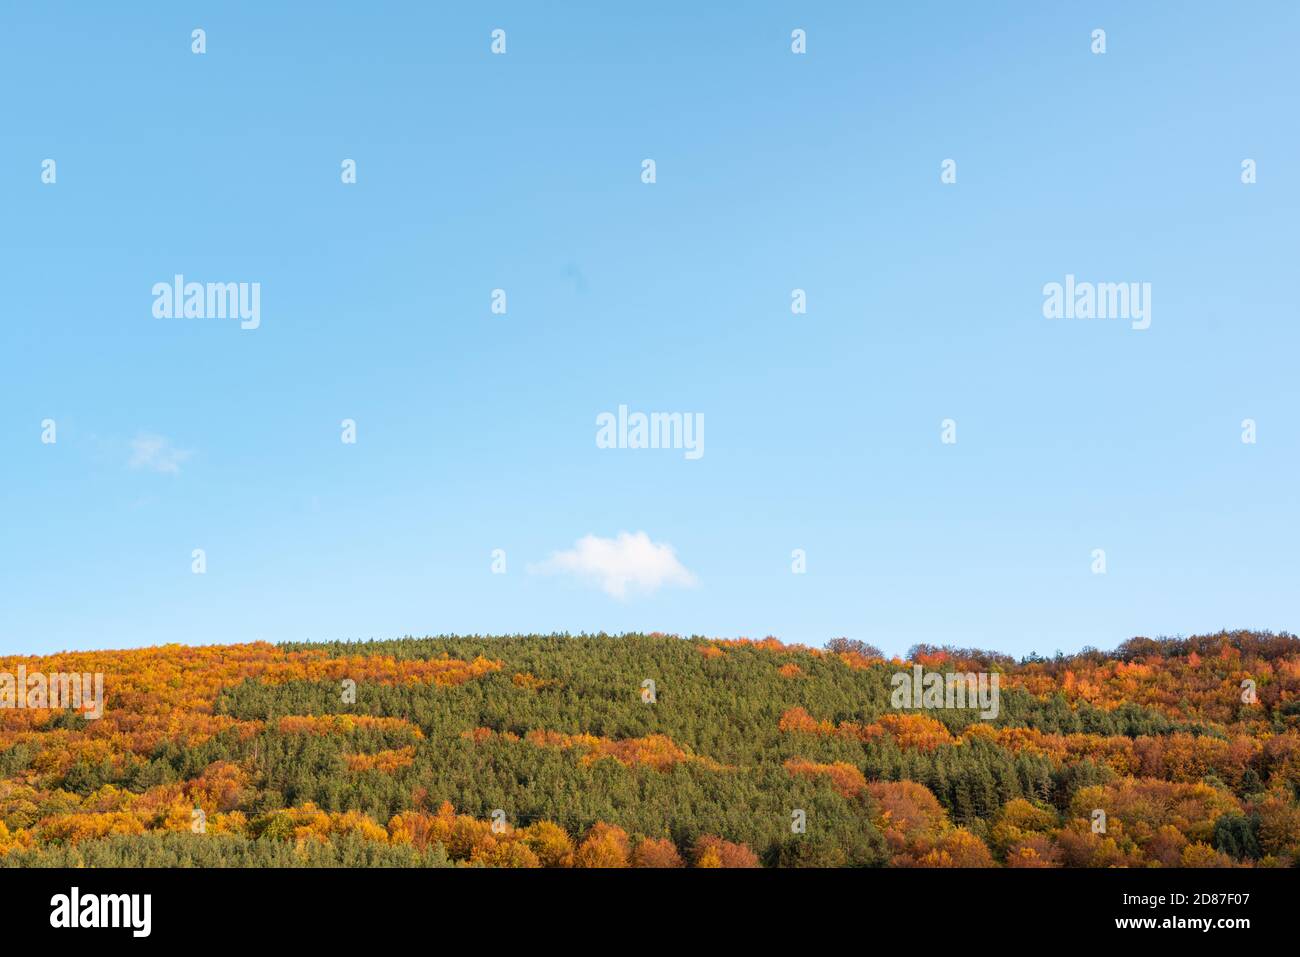 Colline d'automne couverte d'arbres colorés forêt détail orange vif vert minimal montagne paysage rural bulgarie Banque D'Images